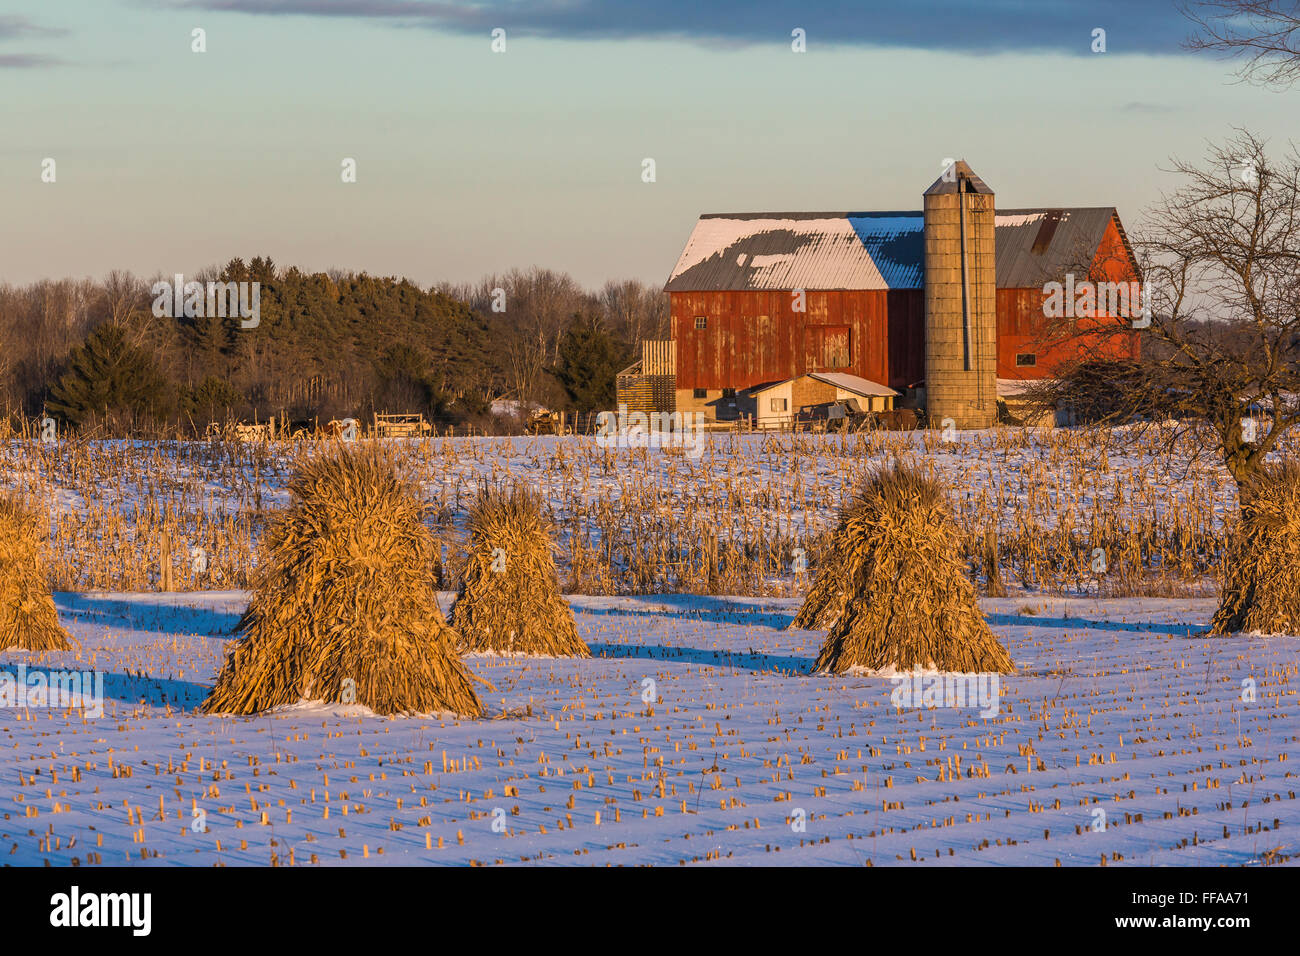 Gli shock di mais in una fattoria Amish in inverno in Michigan centrale nei pressi di Stanwood, STATI UNITI D'AMERICA Foto Stock